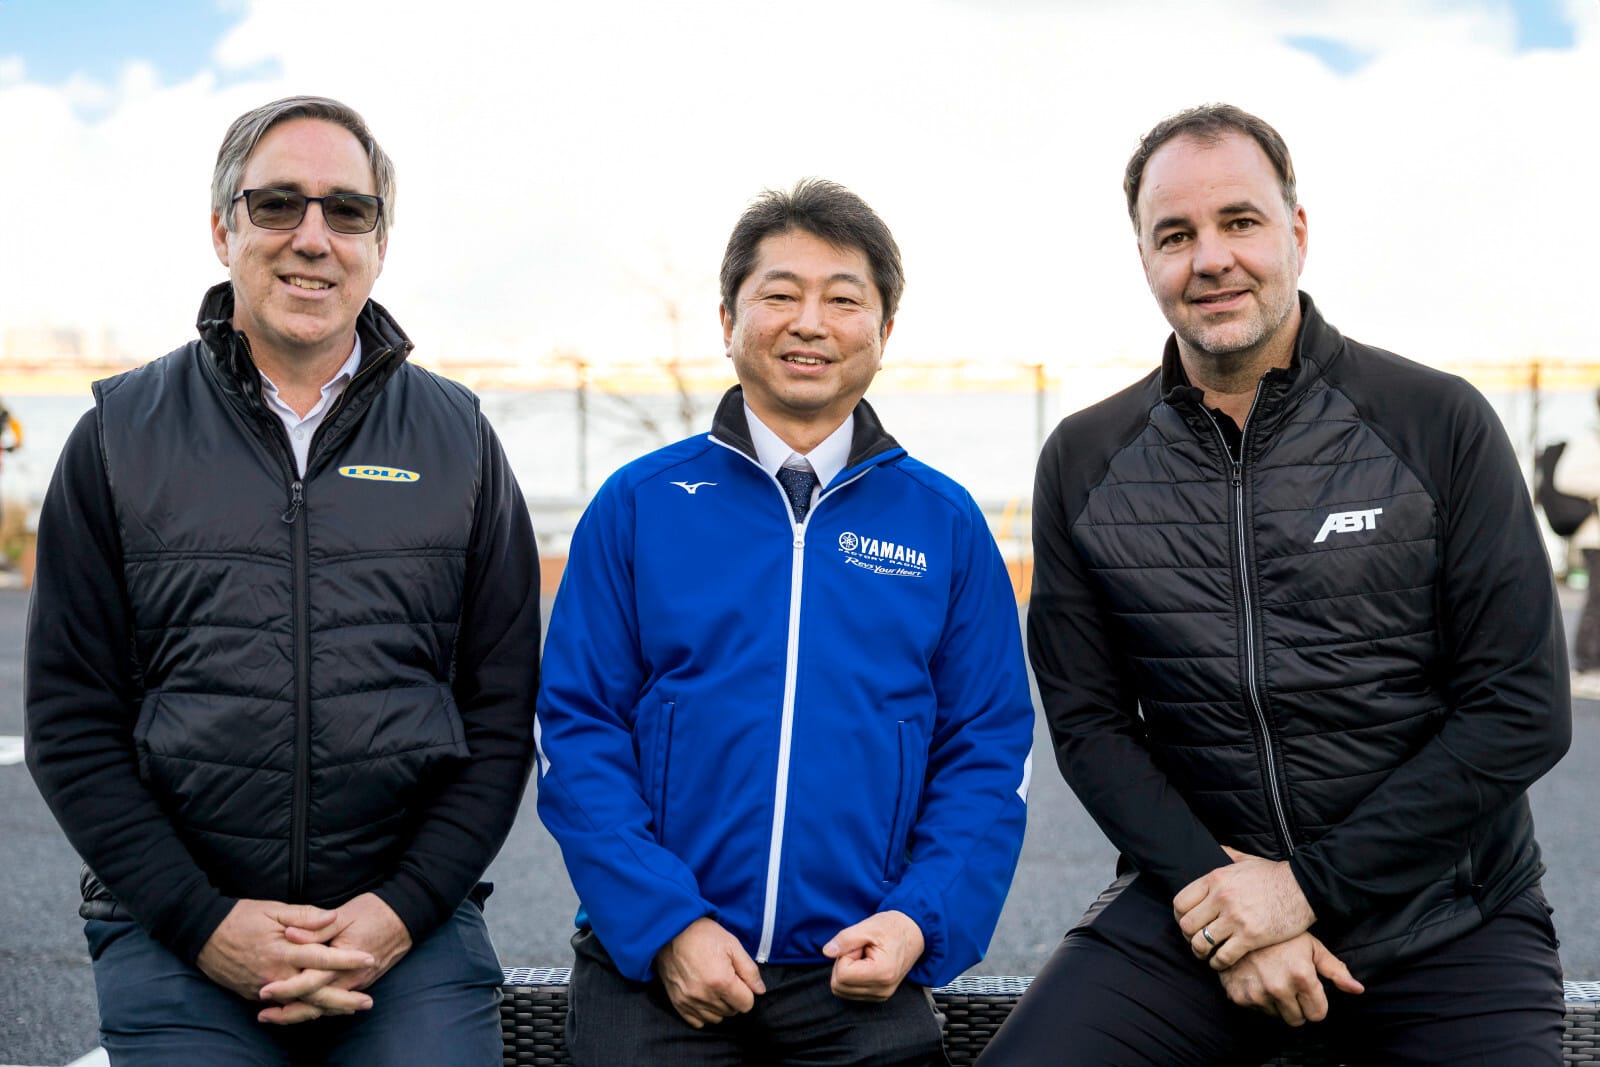 Lola's Mark Preston, Yamaha's Heiji Maruyama and Abt's Thomas Biermaier